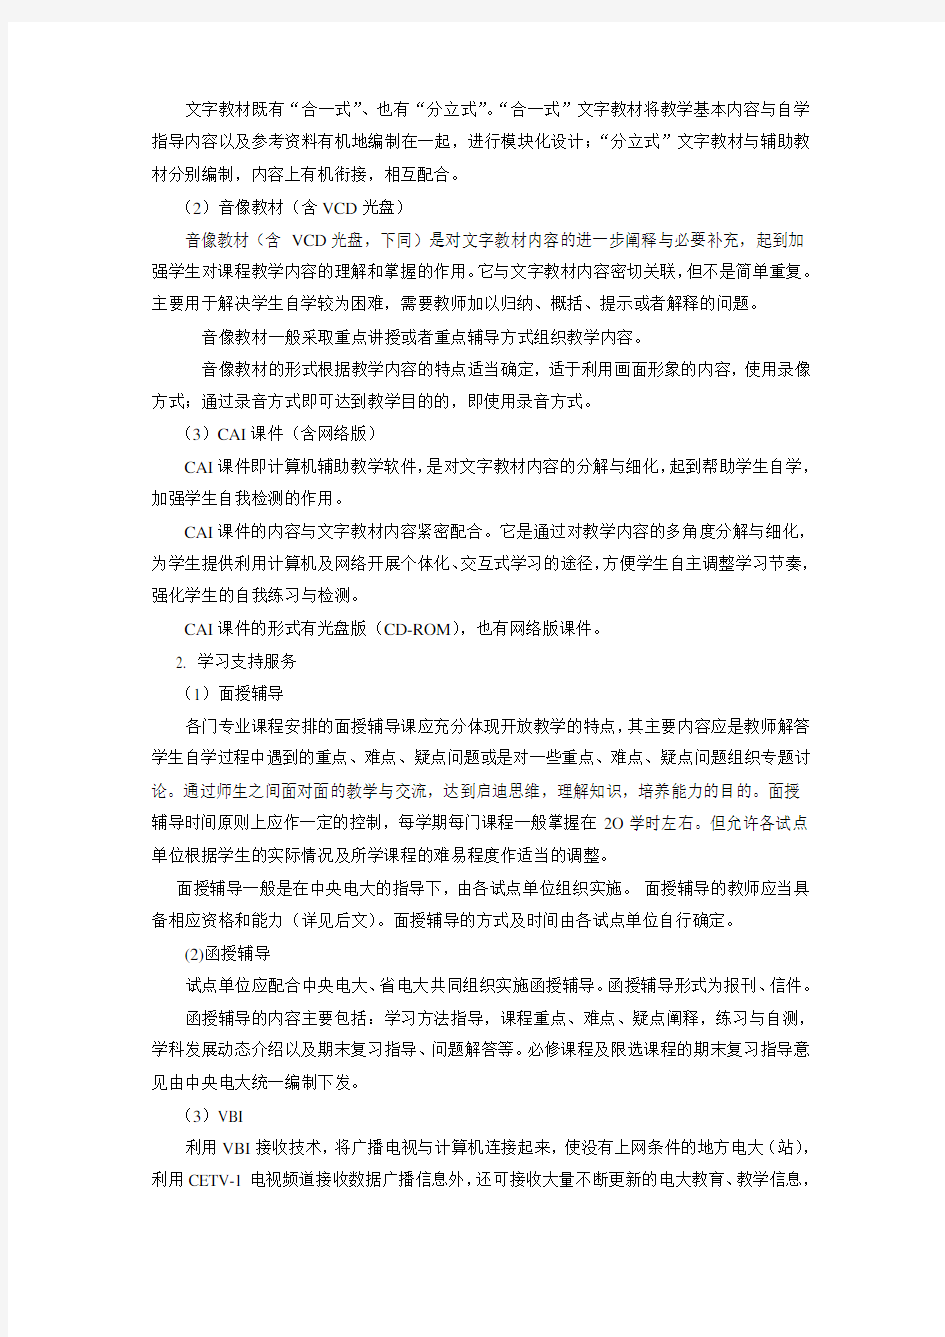 推荐-浙江广播电视大学开放教育试点汉语言文学专业教学实施方案 精品